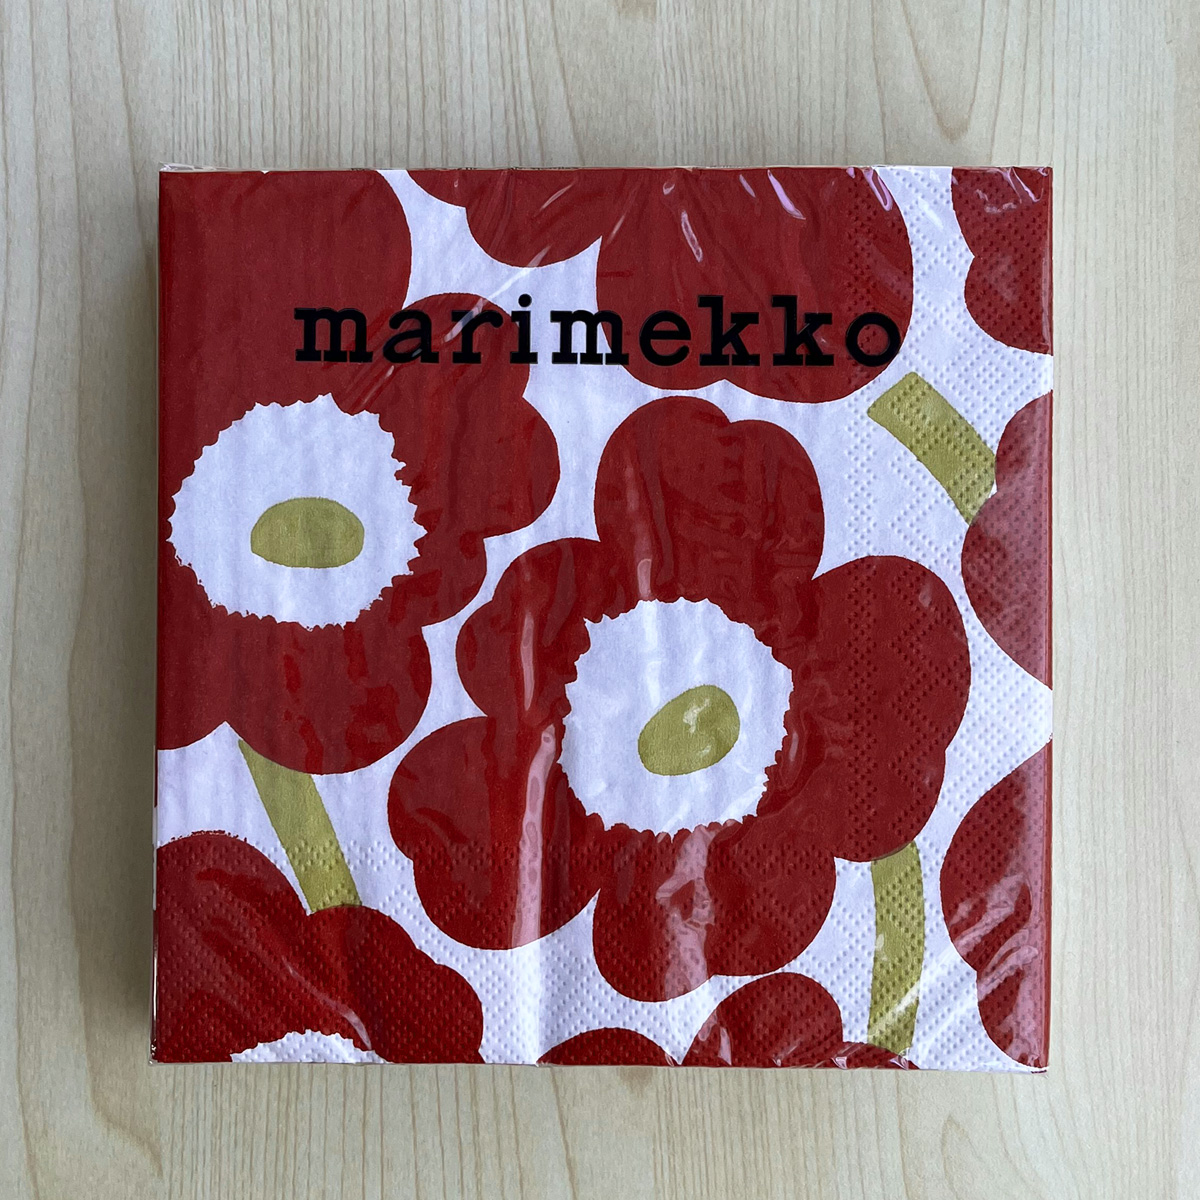 マリメッコ marimekko ペーパーナプキン 紙ナプキン ランチサイズ 20枚 552615 UNIKKO ウニッコ dark red gold ホワイト+ダークレッド系